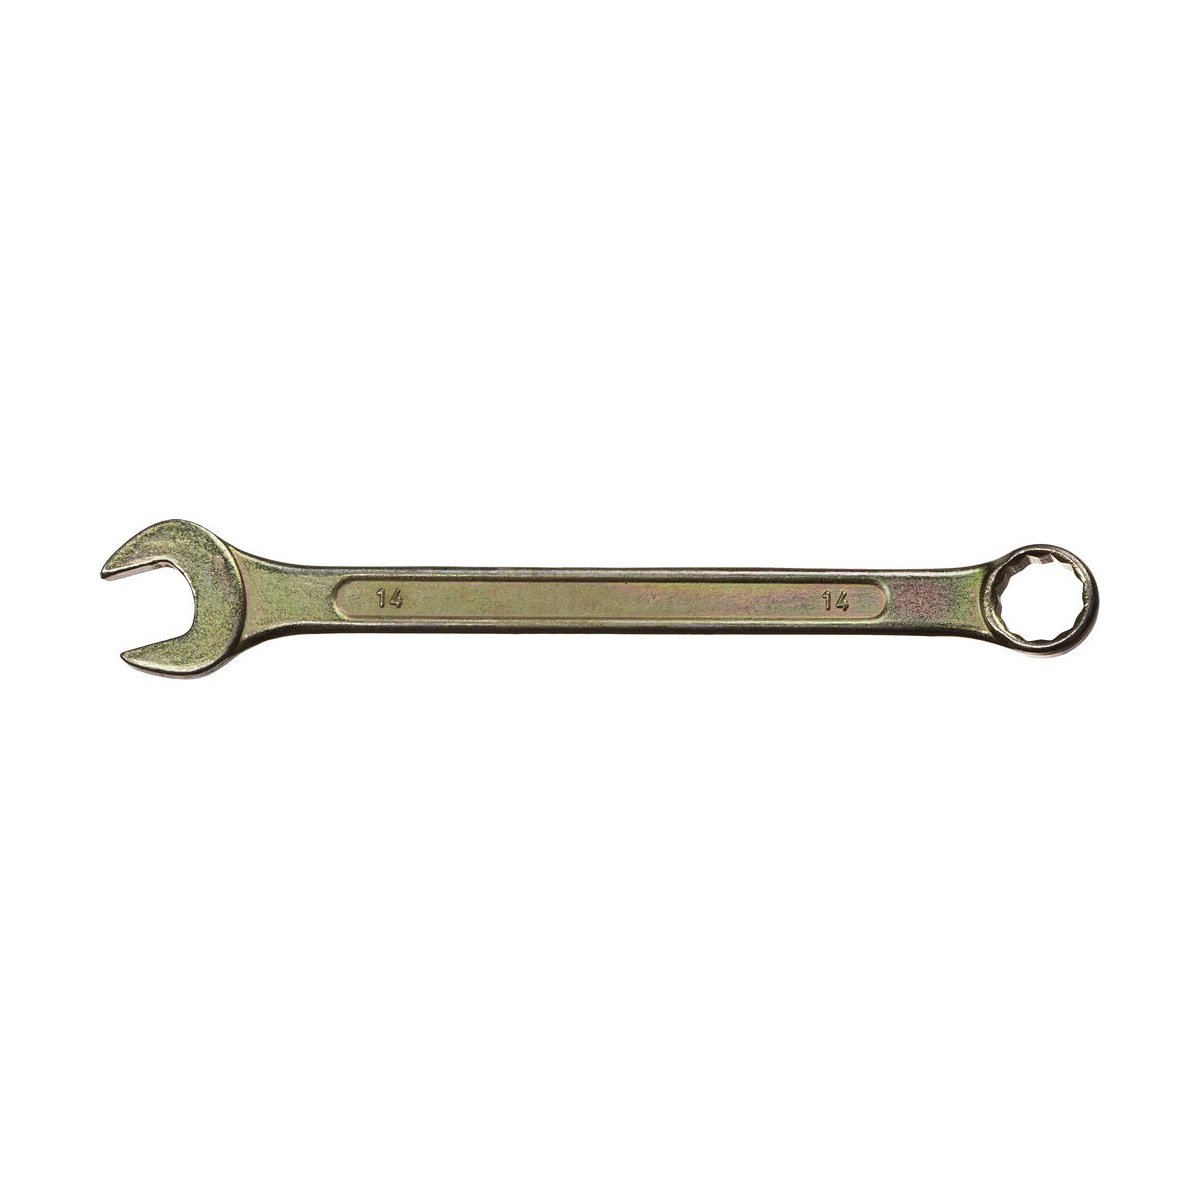 DEXX 14 мм, комбинированный гаечный ключ 27017-14